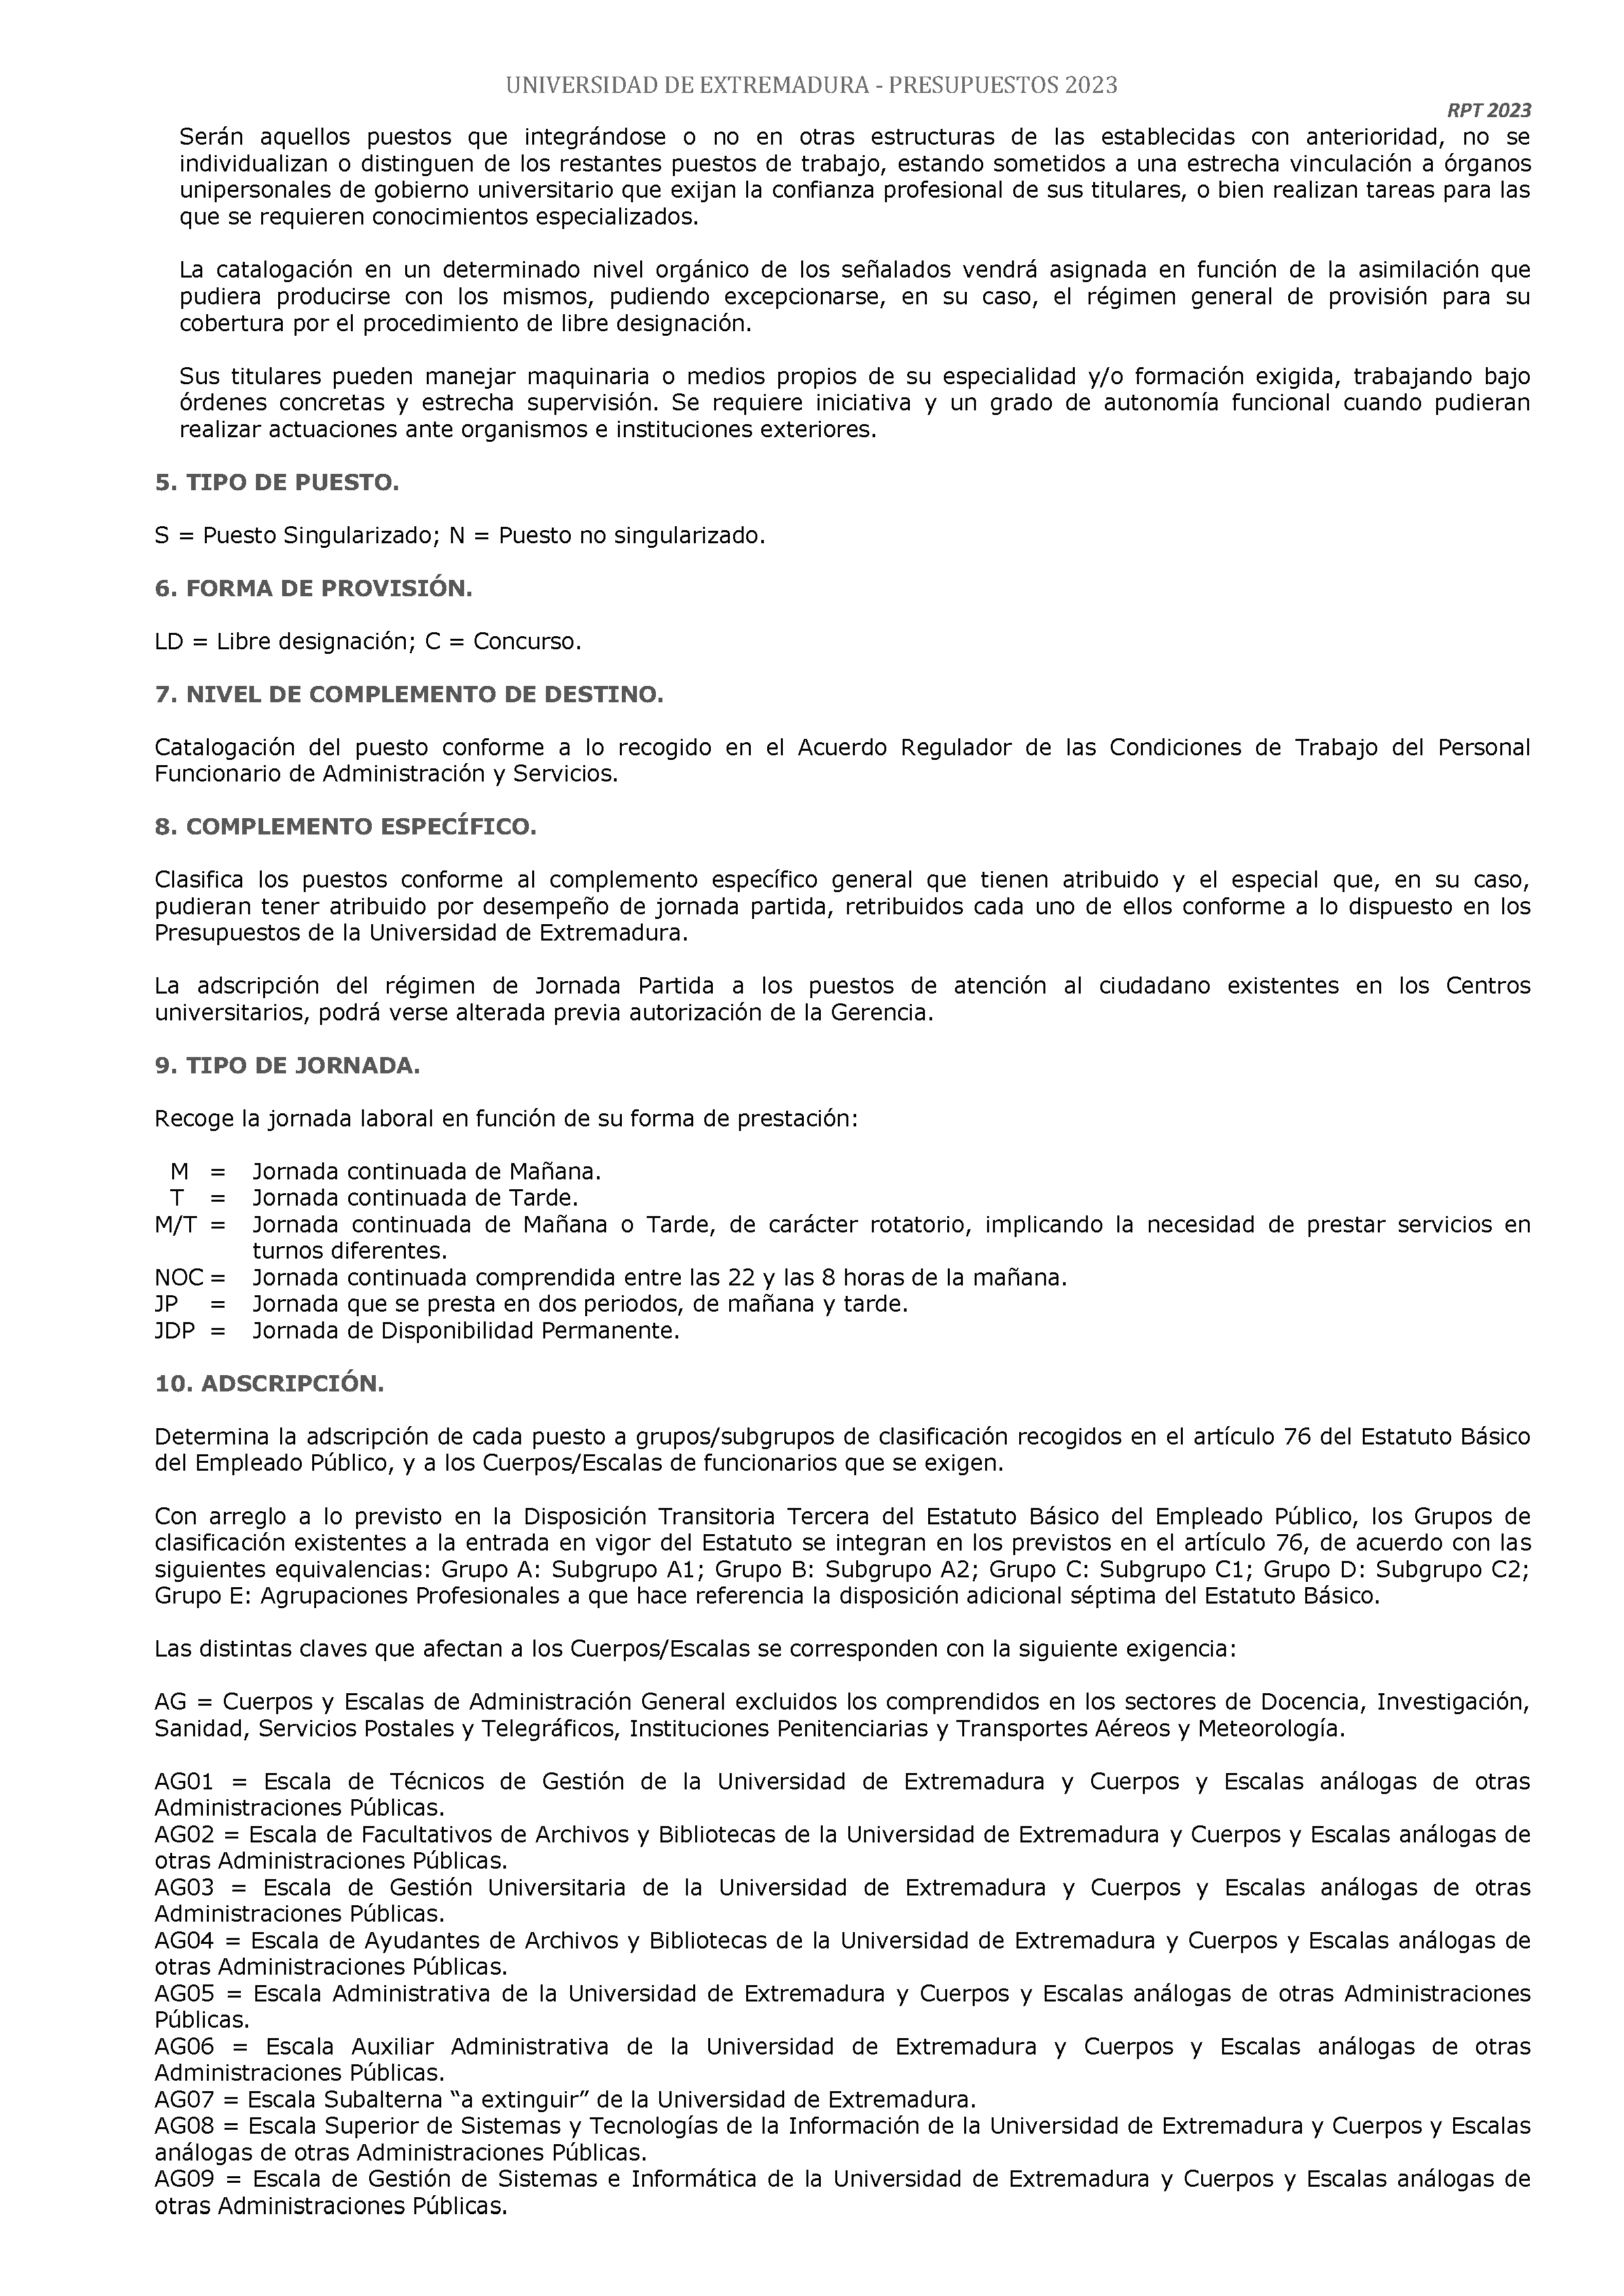 ANEXO - ESTADO NUMERICO DEL PRESUPUESTO Pag 128